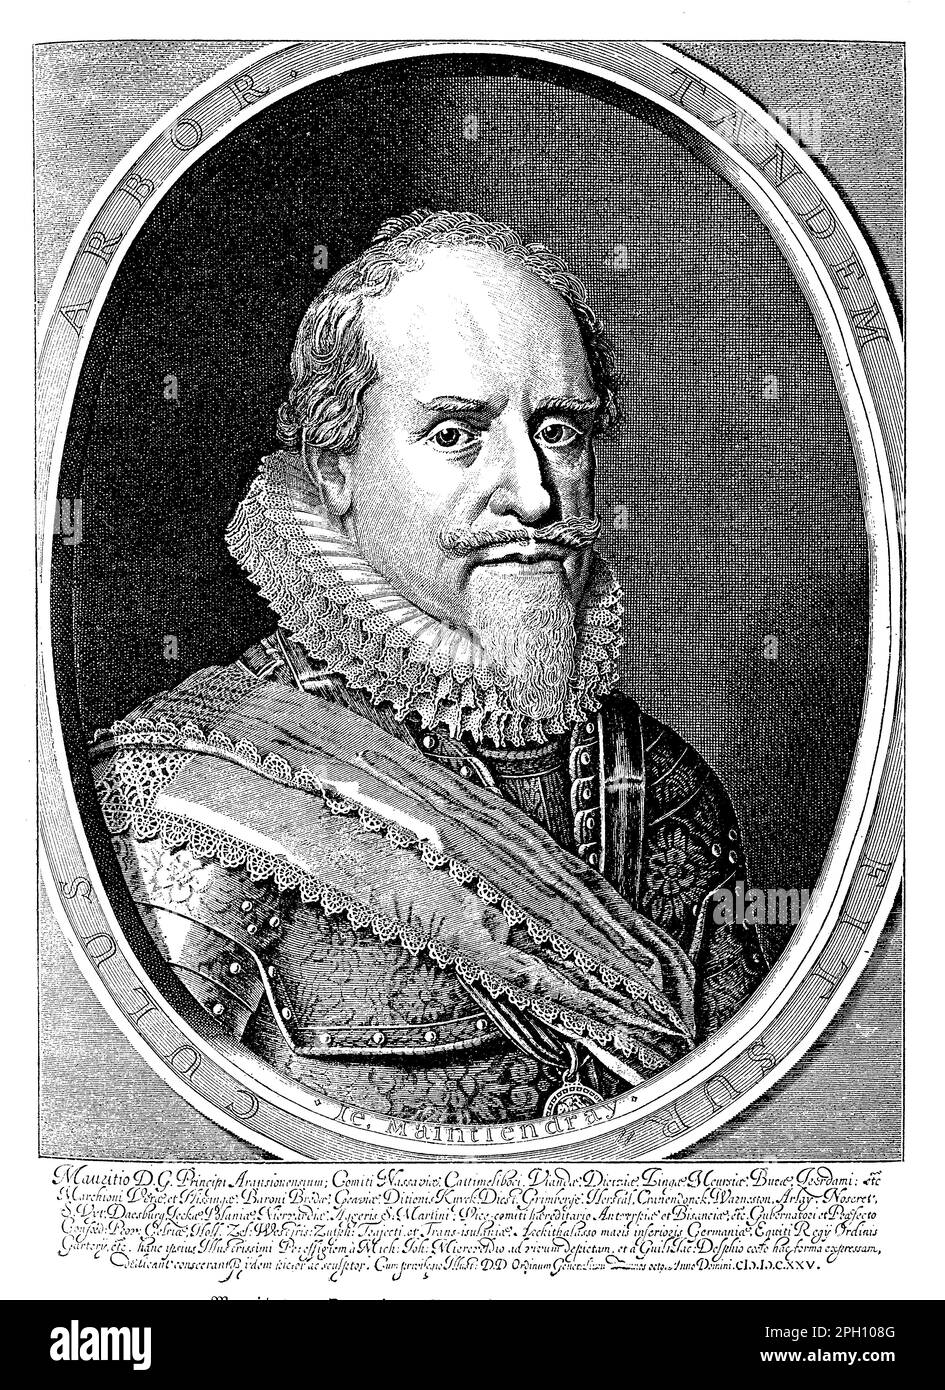 Maurice of Orange (1567-1625) war ein niederländischer Prinz und Militärführer, der eine Schlüsselrolle bei der niederländischen Revolte gegen die spanische Herrschaft und bei der Gründung der Vereinigten Provinzen der Niederlande spielte. Er gilt weithin als einer der größten Militärbefehlshaber der frühen Neuzeit, bekannt für seine innovative Taktik und strategische Vision. Maurice war maßgeblich an mehreren wichtigen Schlachten beteiligt, darunter der Belagerung von Leiden und der Schlacht von Nieuwpoort. Außerdem spielte er eine Schlüsselrolle bei der Gründung der Dutch East India Company und der Modernisierung der niederländischen Armee. Maurices Vermächtnis ist weiterhin feierlich Stockfoto